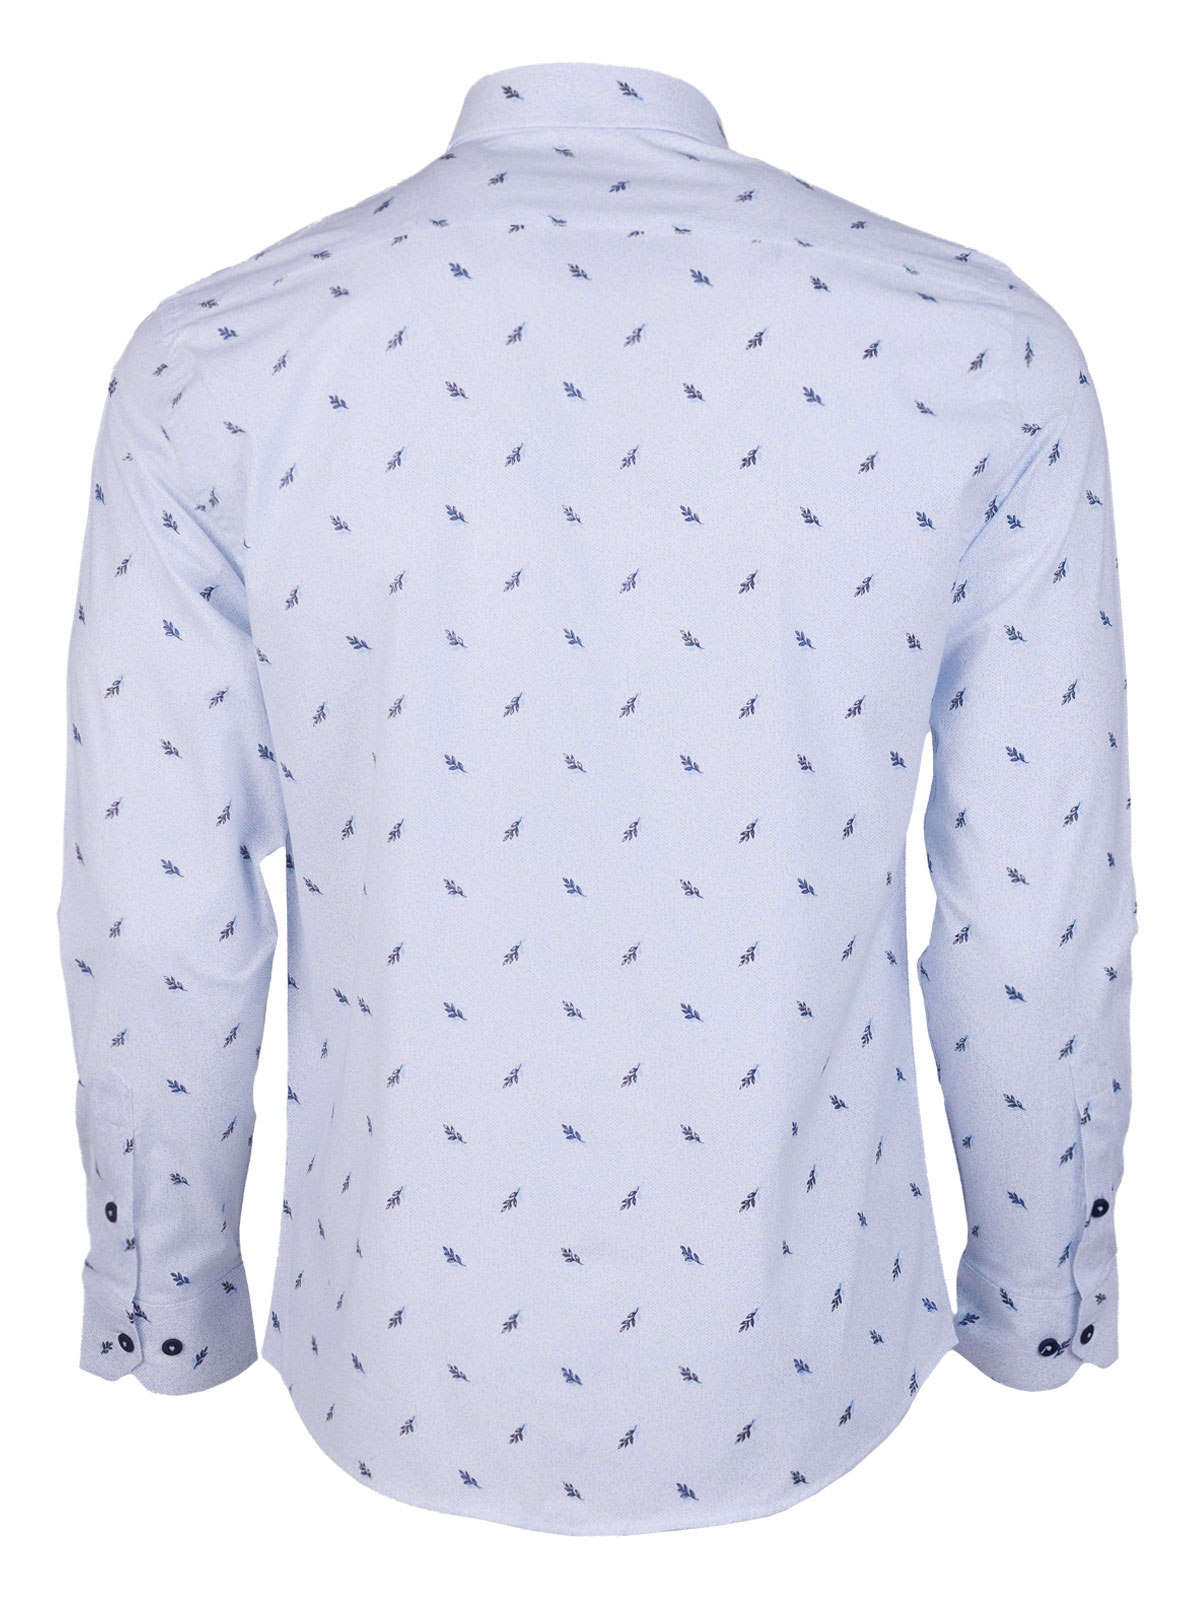 Μπλε πουκάμισο με κλαδιά - 21606 € 44.43 img2